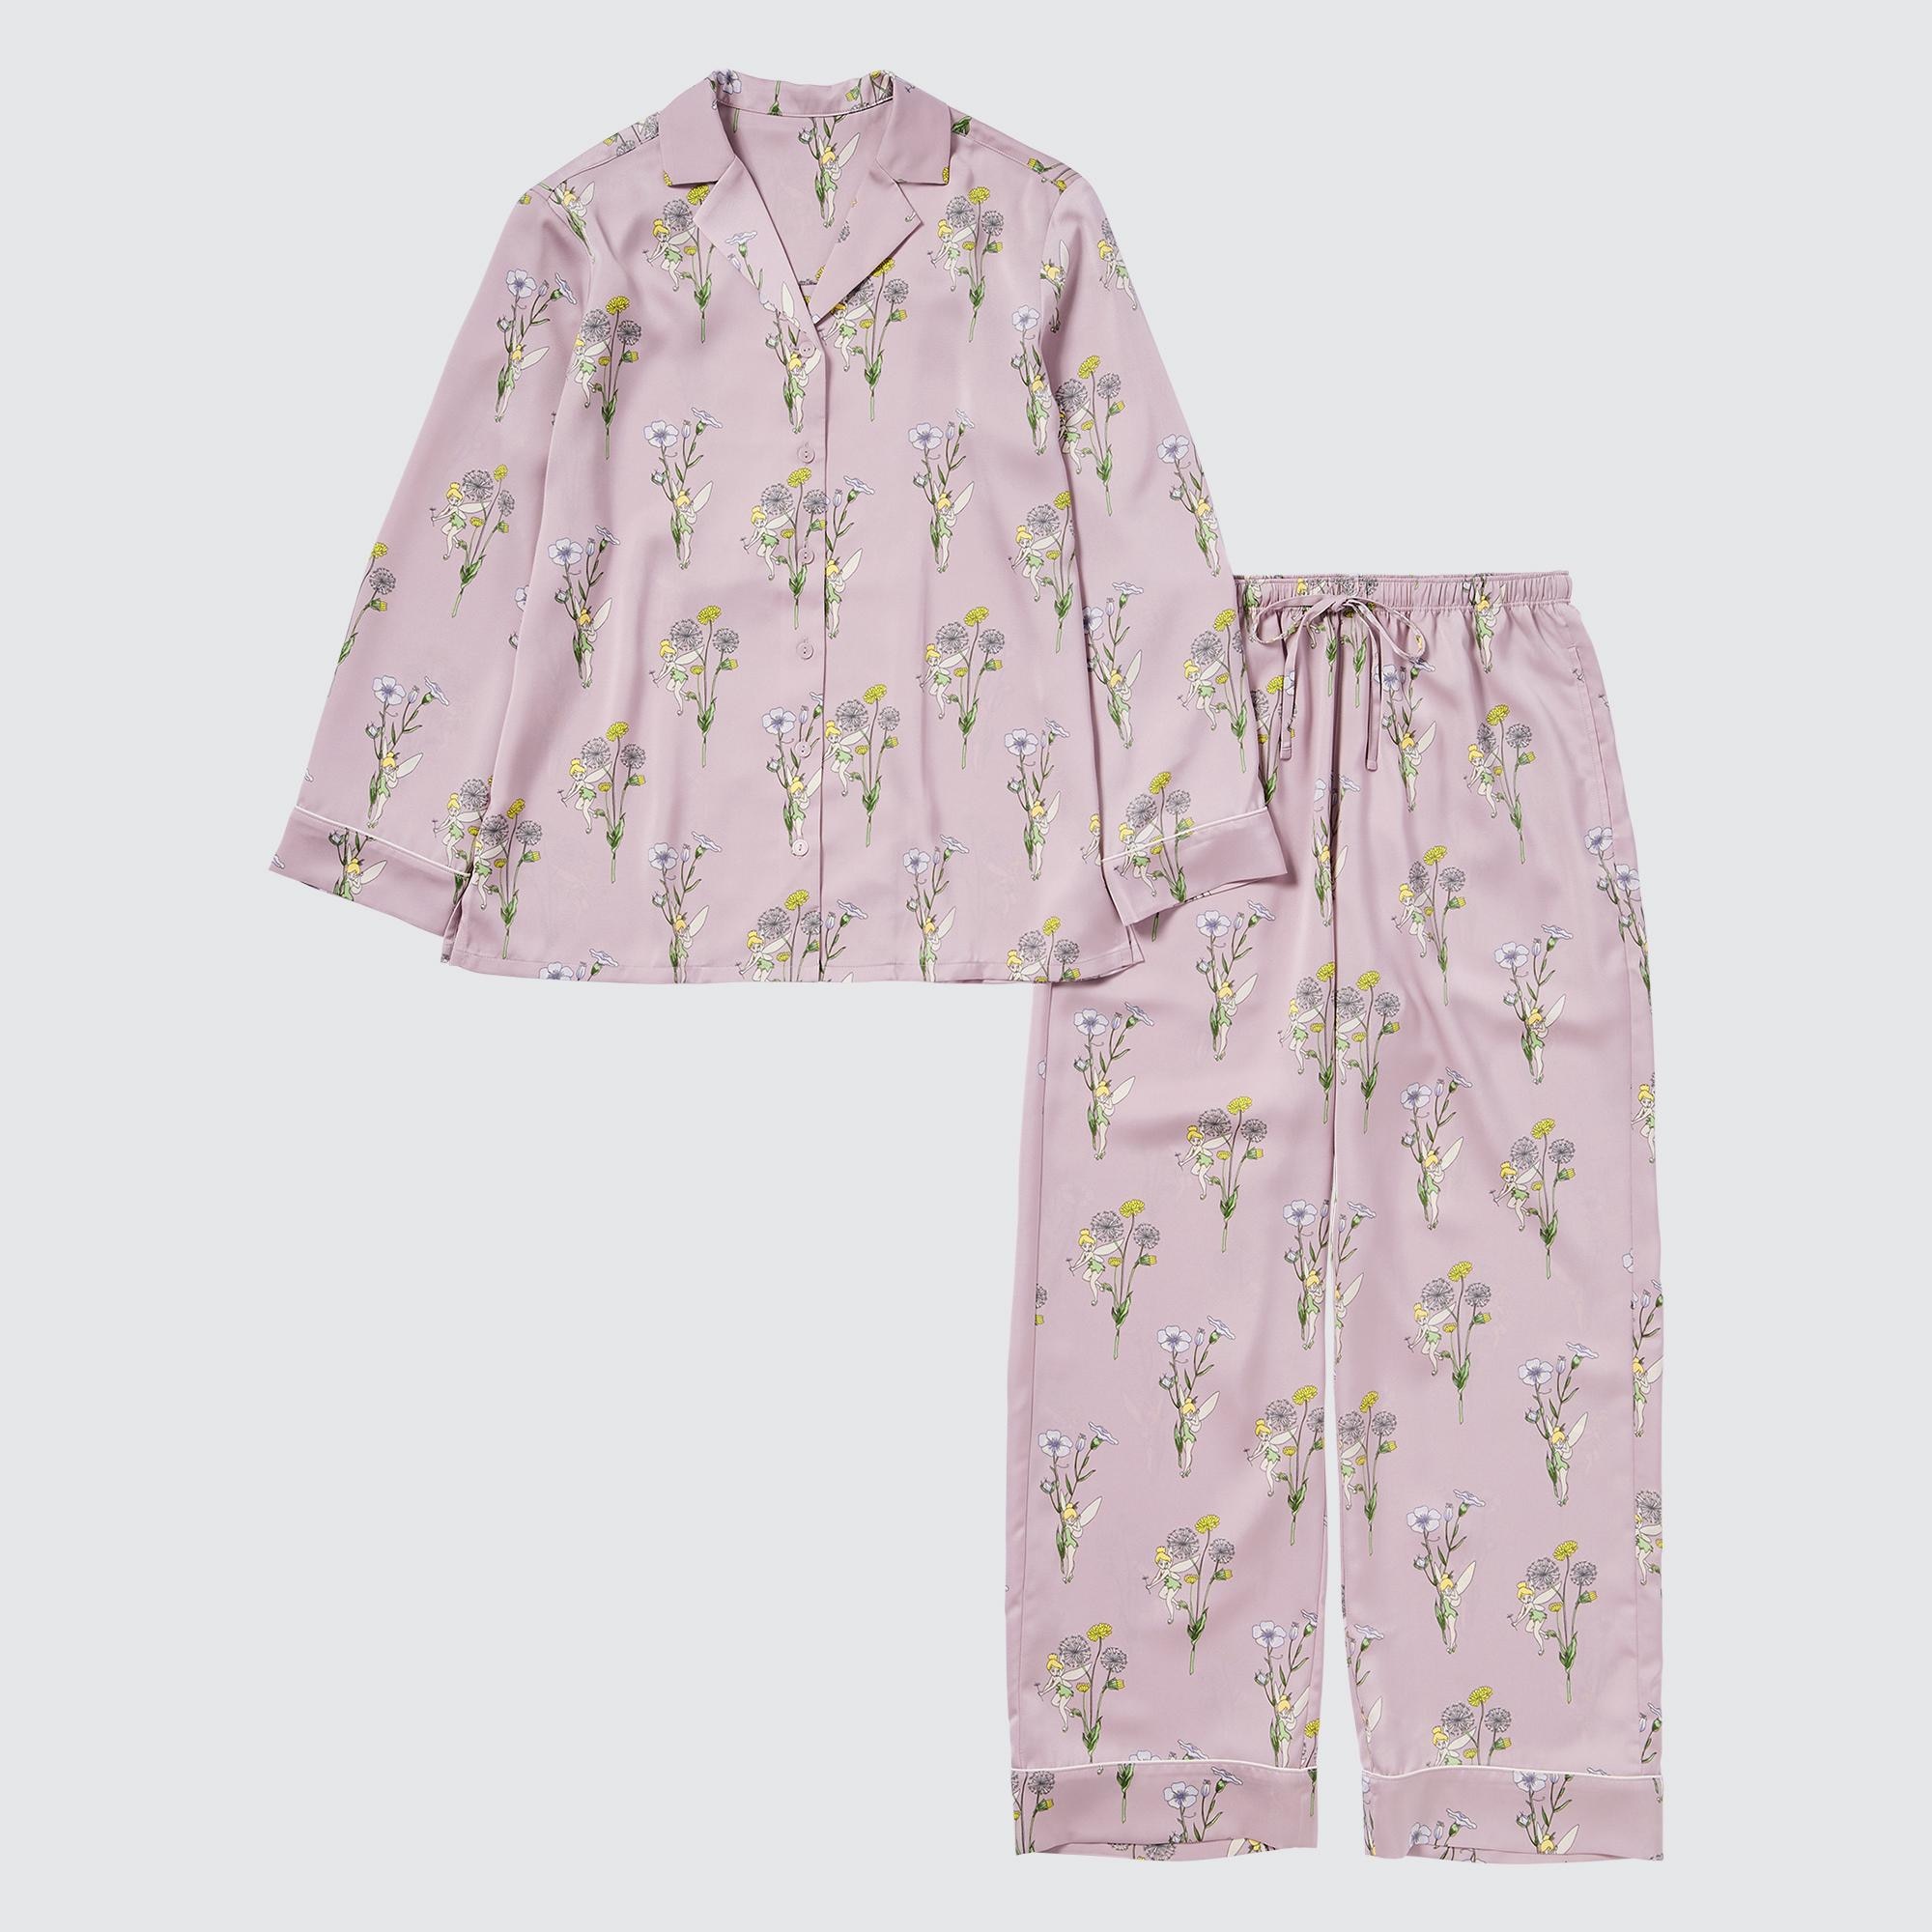 Bộ quần áo ngủ Pijama nữ dài tay Uniqlo chất cotton  Shop Nhất   Shopnhatvn